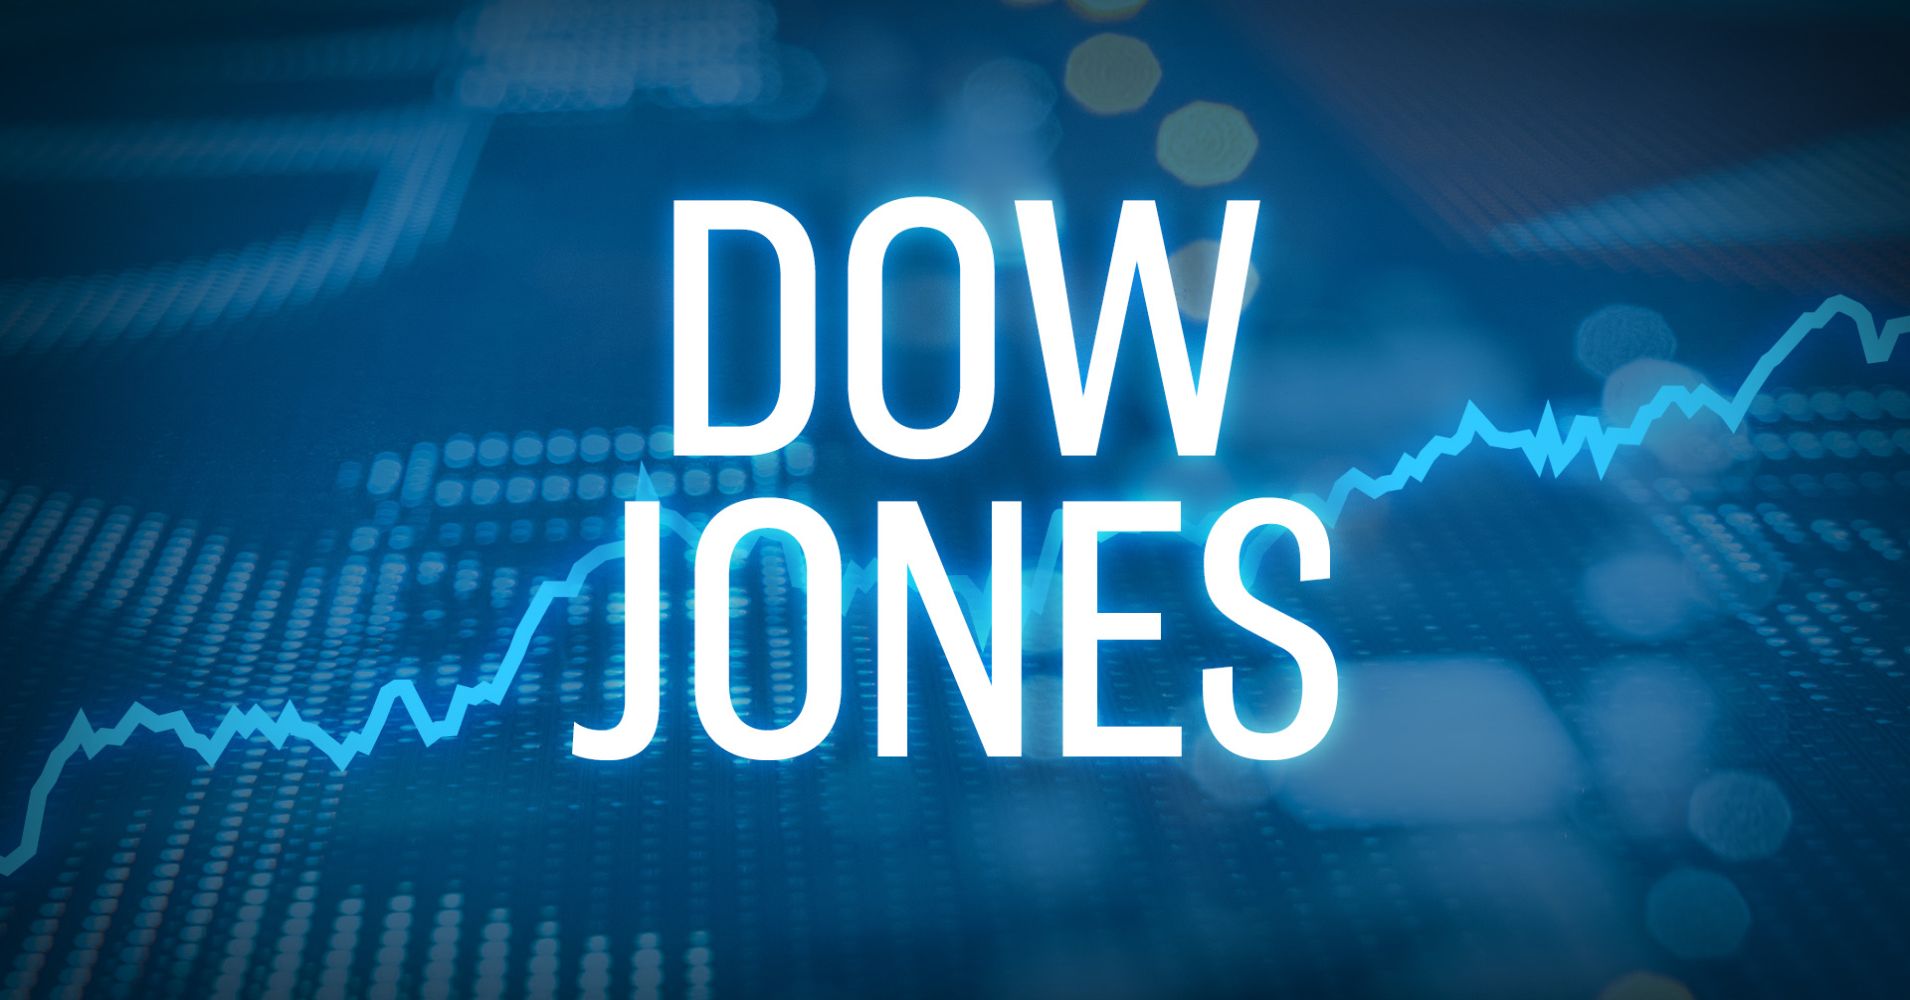 Hợp đồng tương lai Dow Jones tăng 200 điểm